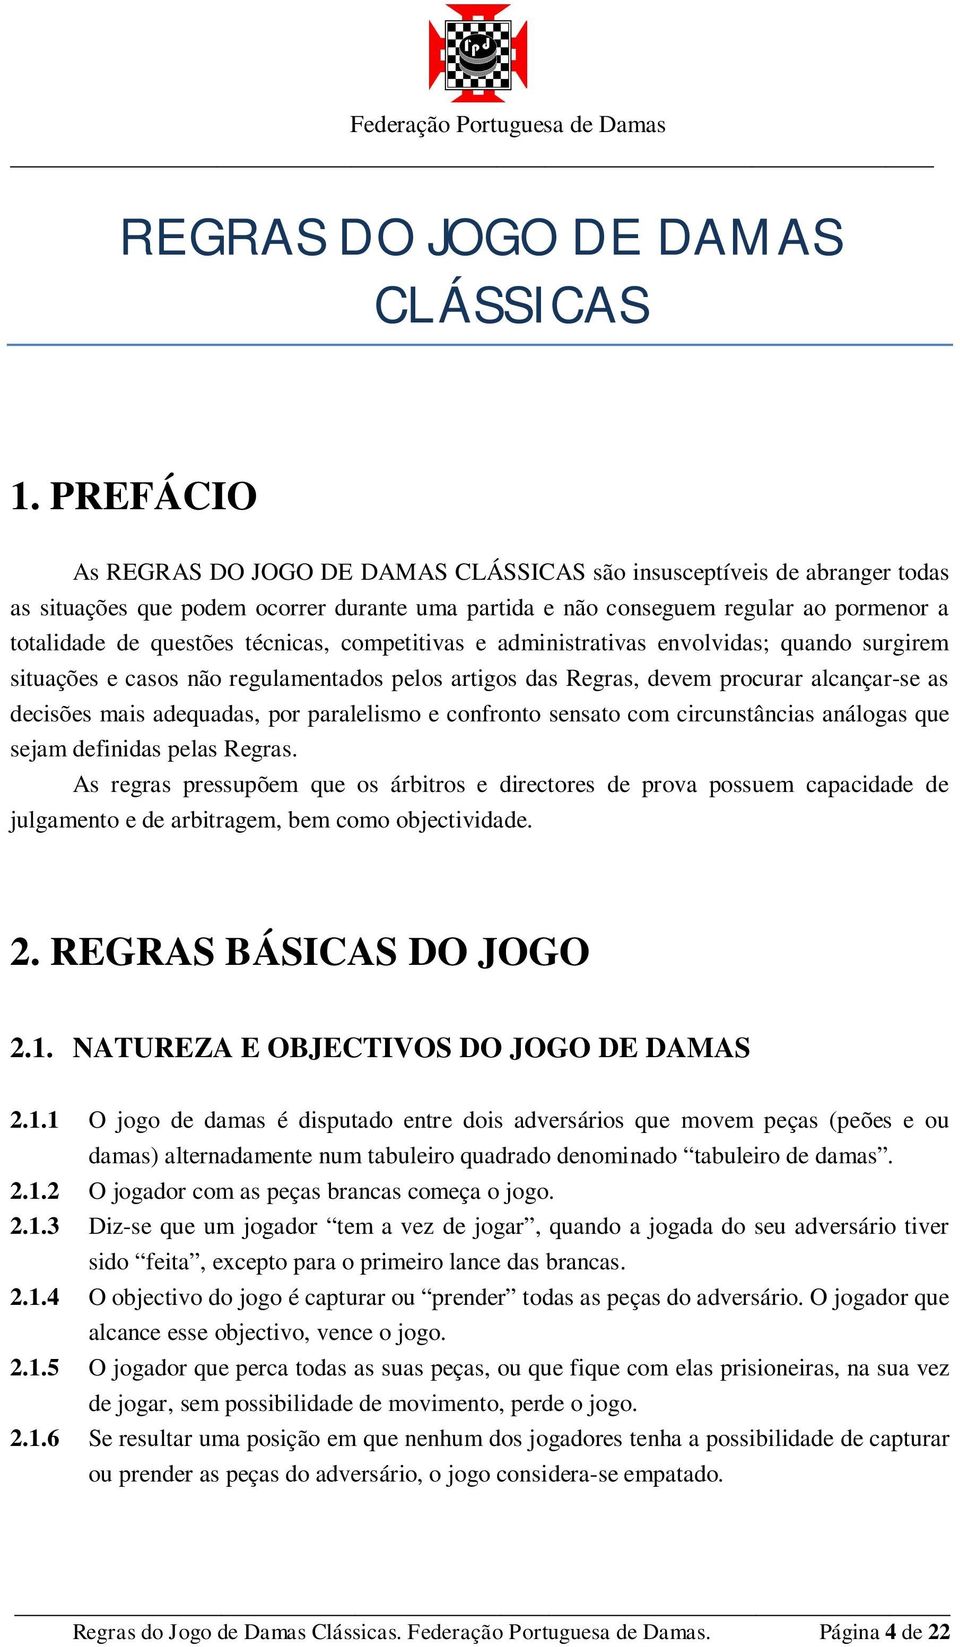 Regras do Jogo de Dama.pdf - Webnode